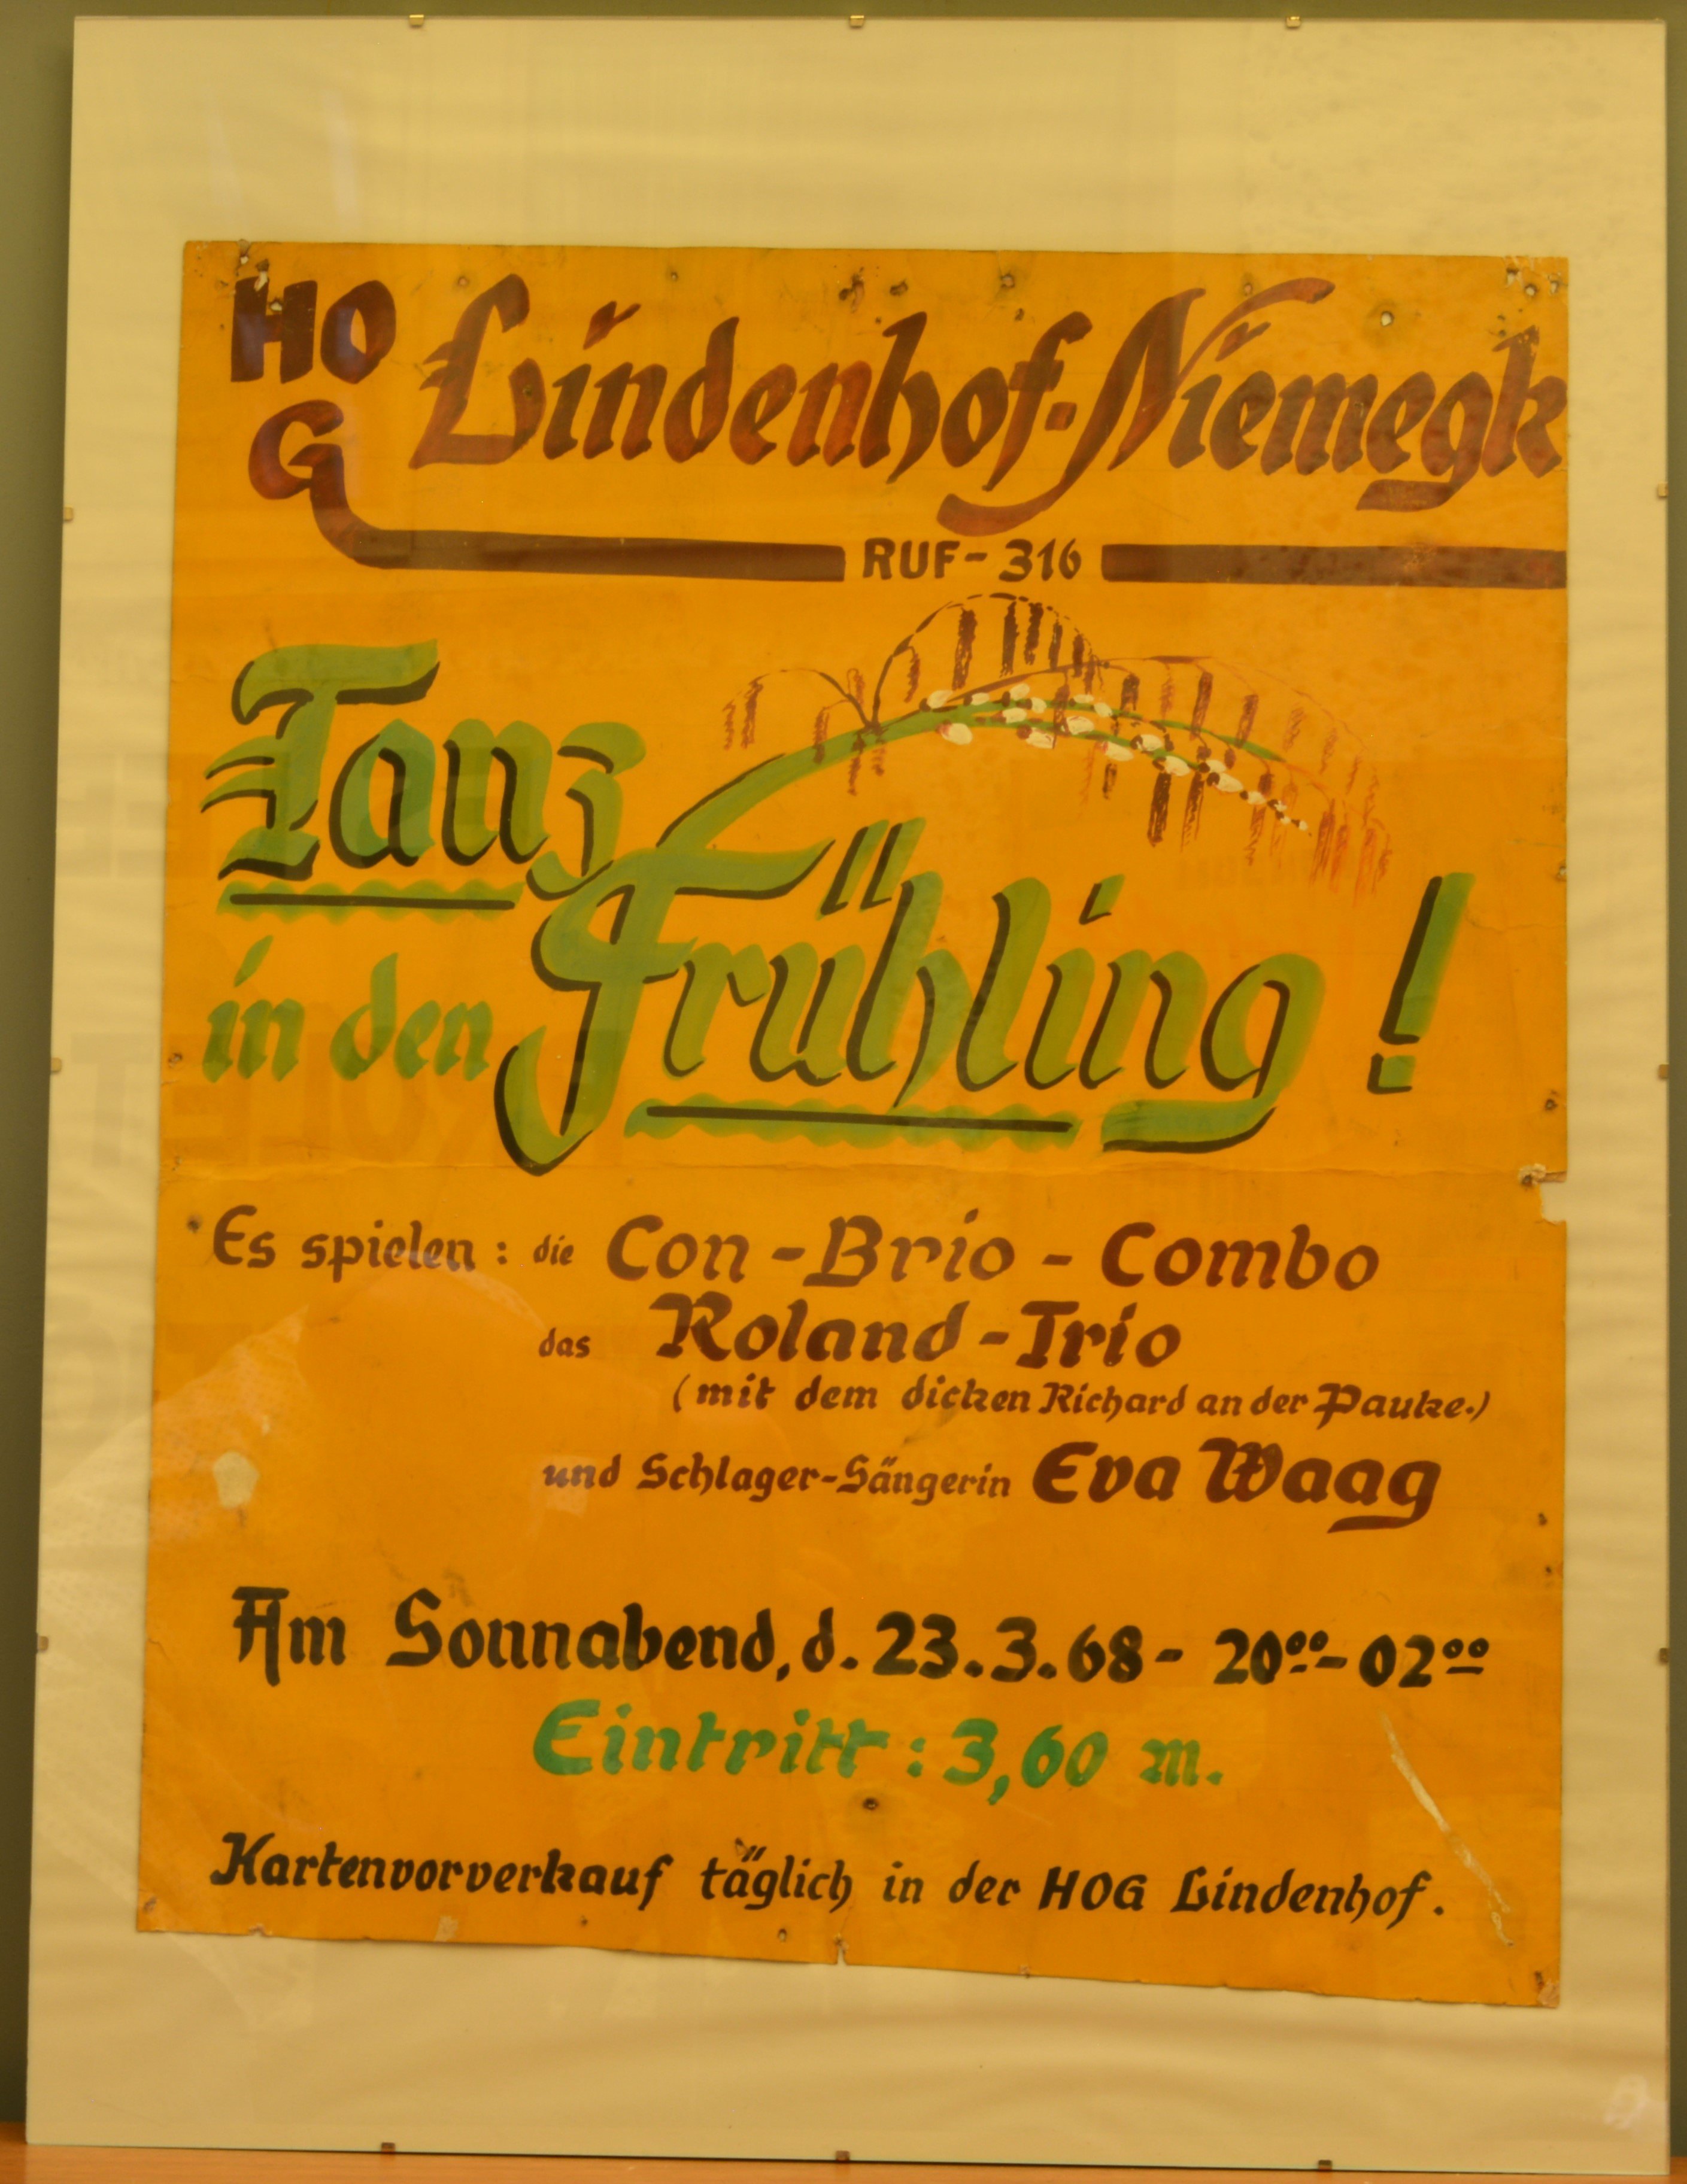 Veranstaltungsplakat der Handelsorganisation Gaststätte Lindenhof in Niemegk (DDR Geschichtsmuseum im Dokumentationszentrum Perleberg CC BY-SA)